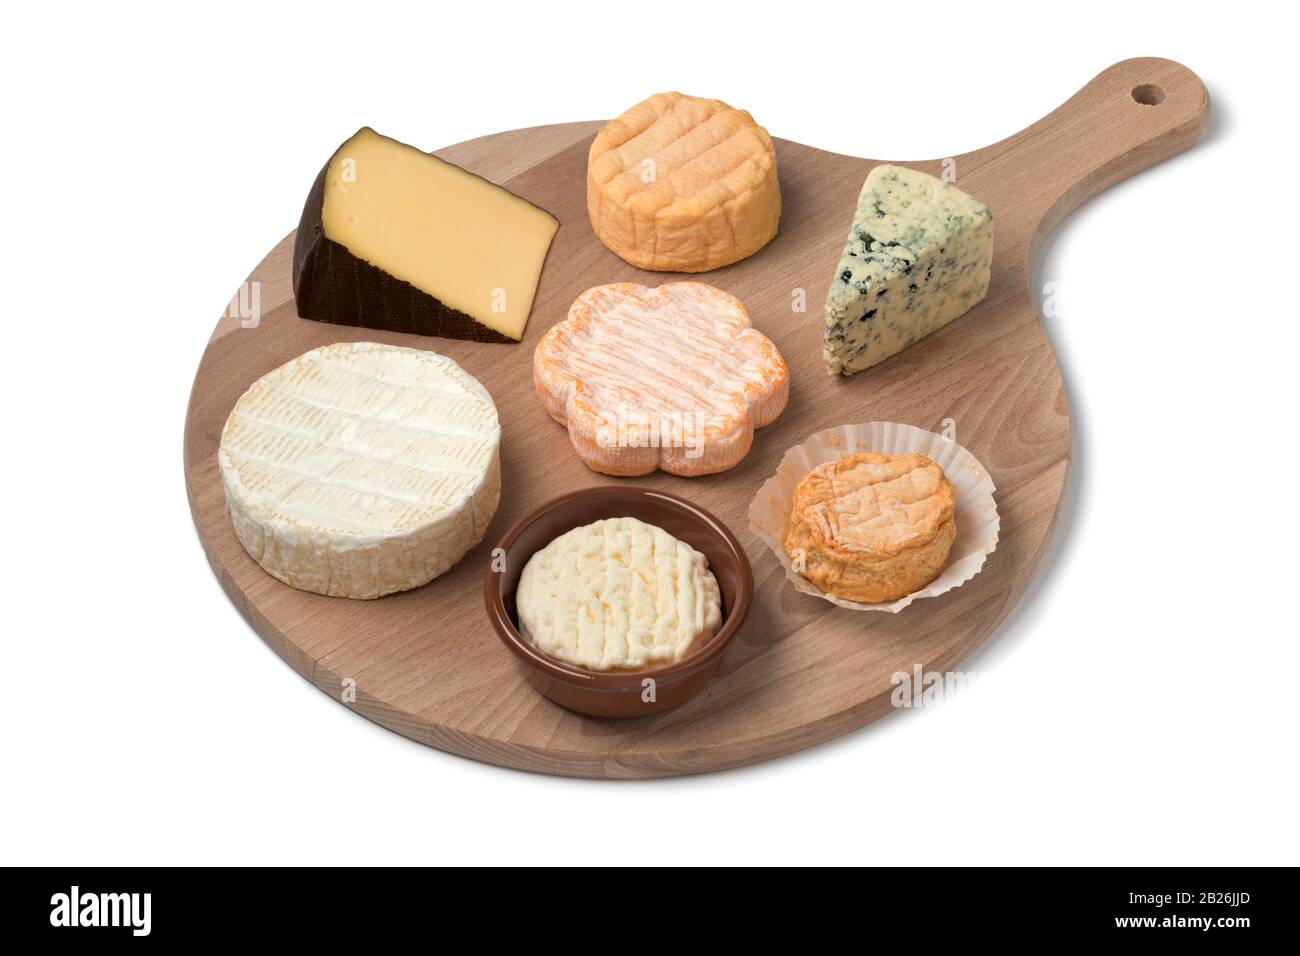 Tabla de quesos de madera con una variedad de quesos para postre de cerca aislados sobre fondo blanco Foto de stock